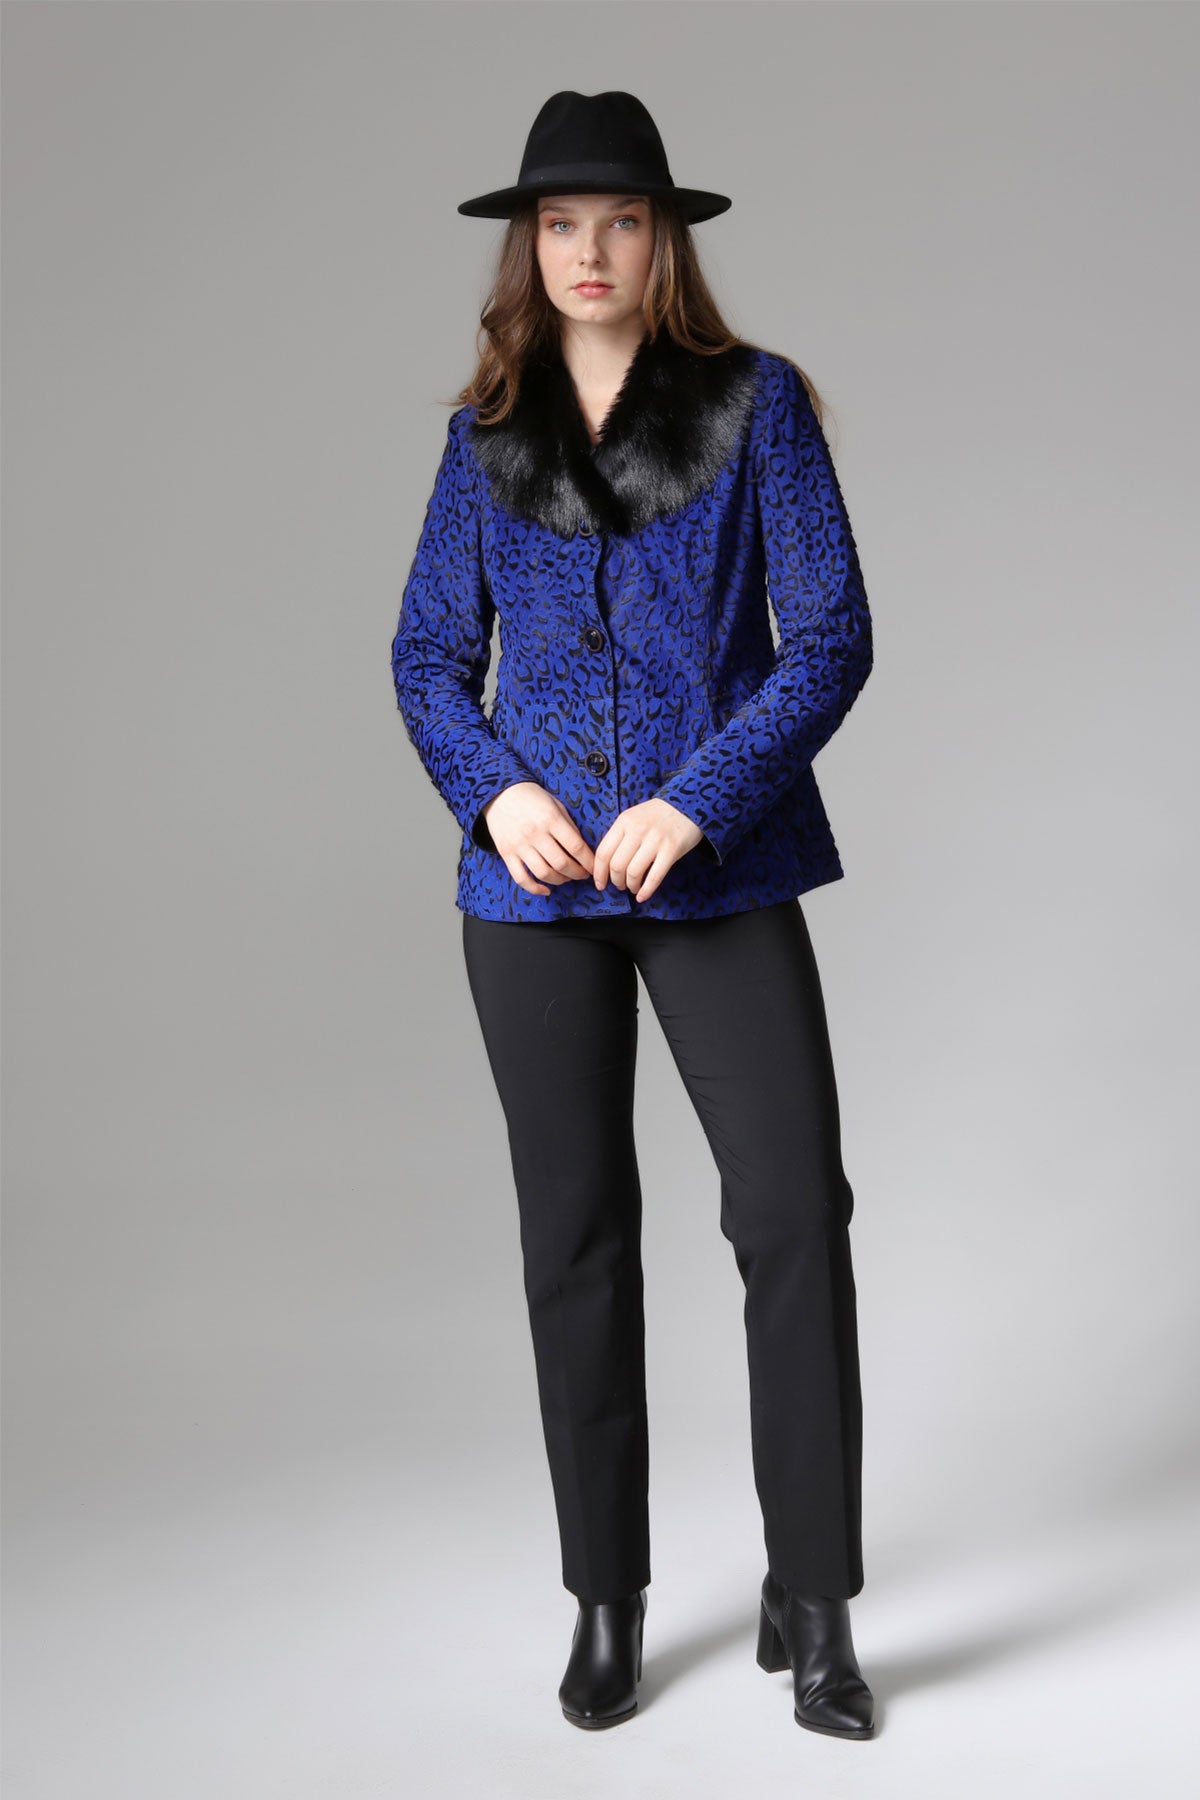 Saks Women's Leopard Patterned Leather Jacket